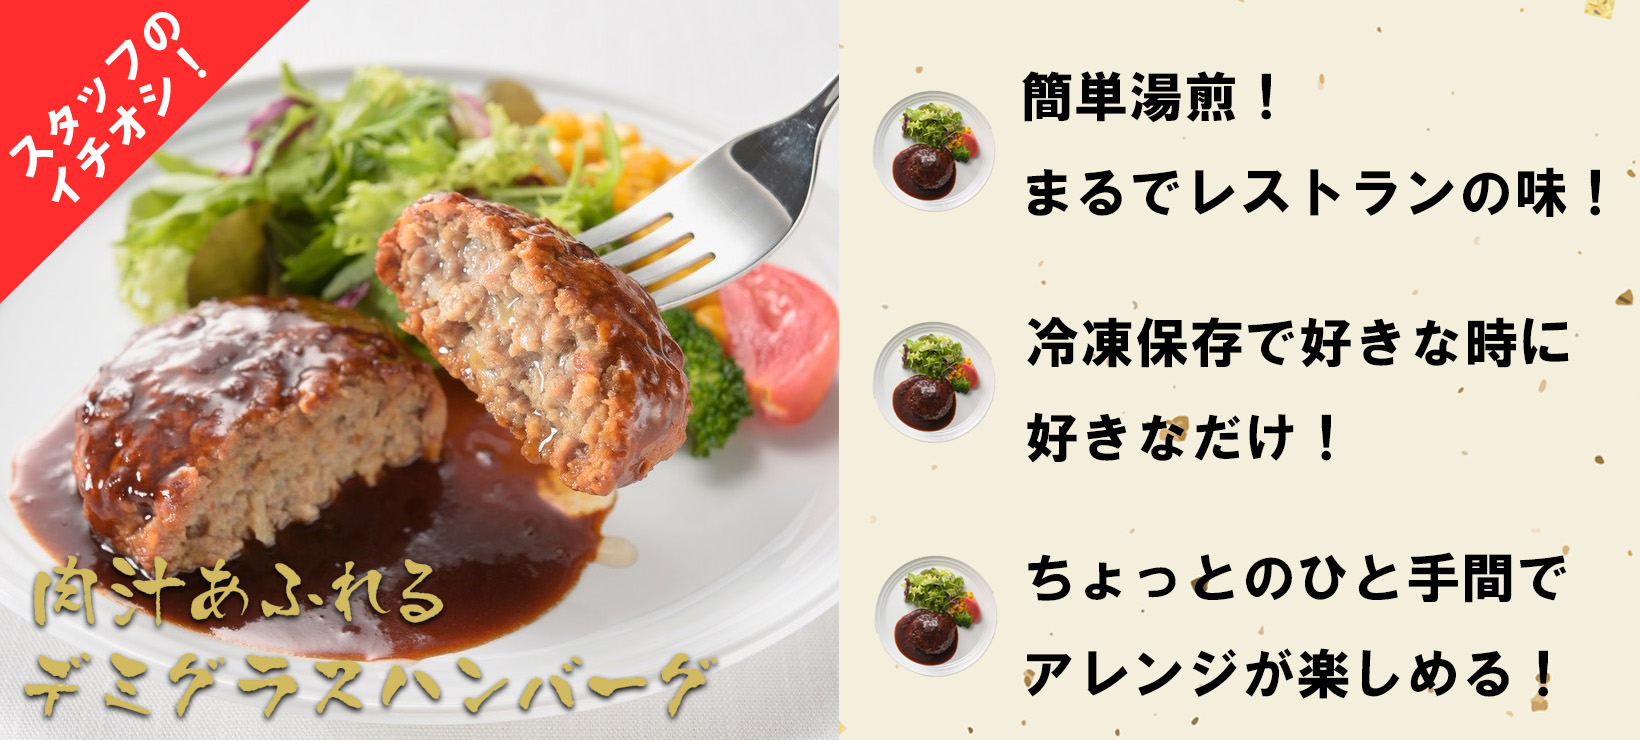 【冷凍惣菜】ハンバーグ・ステーキ